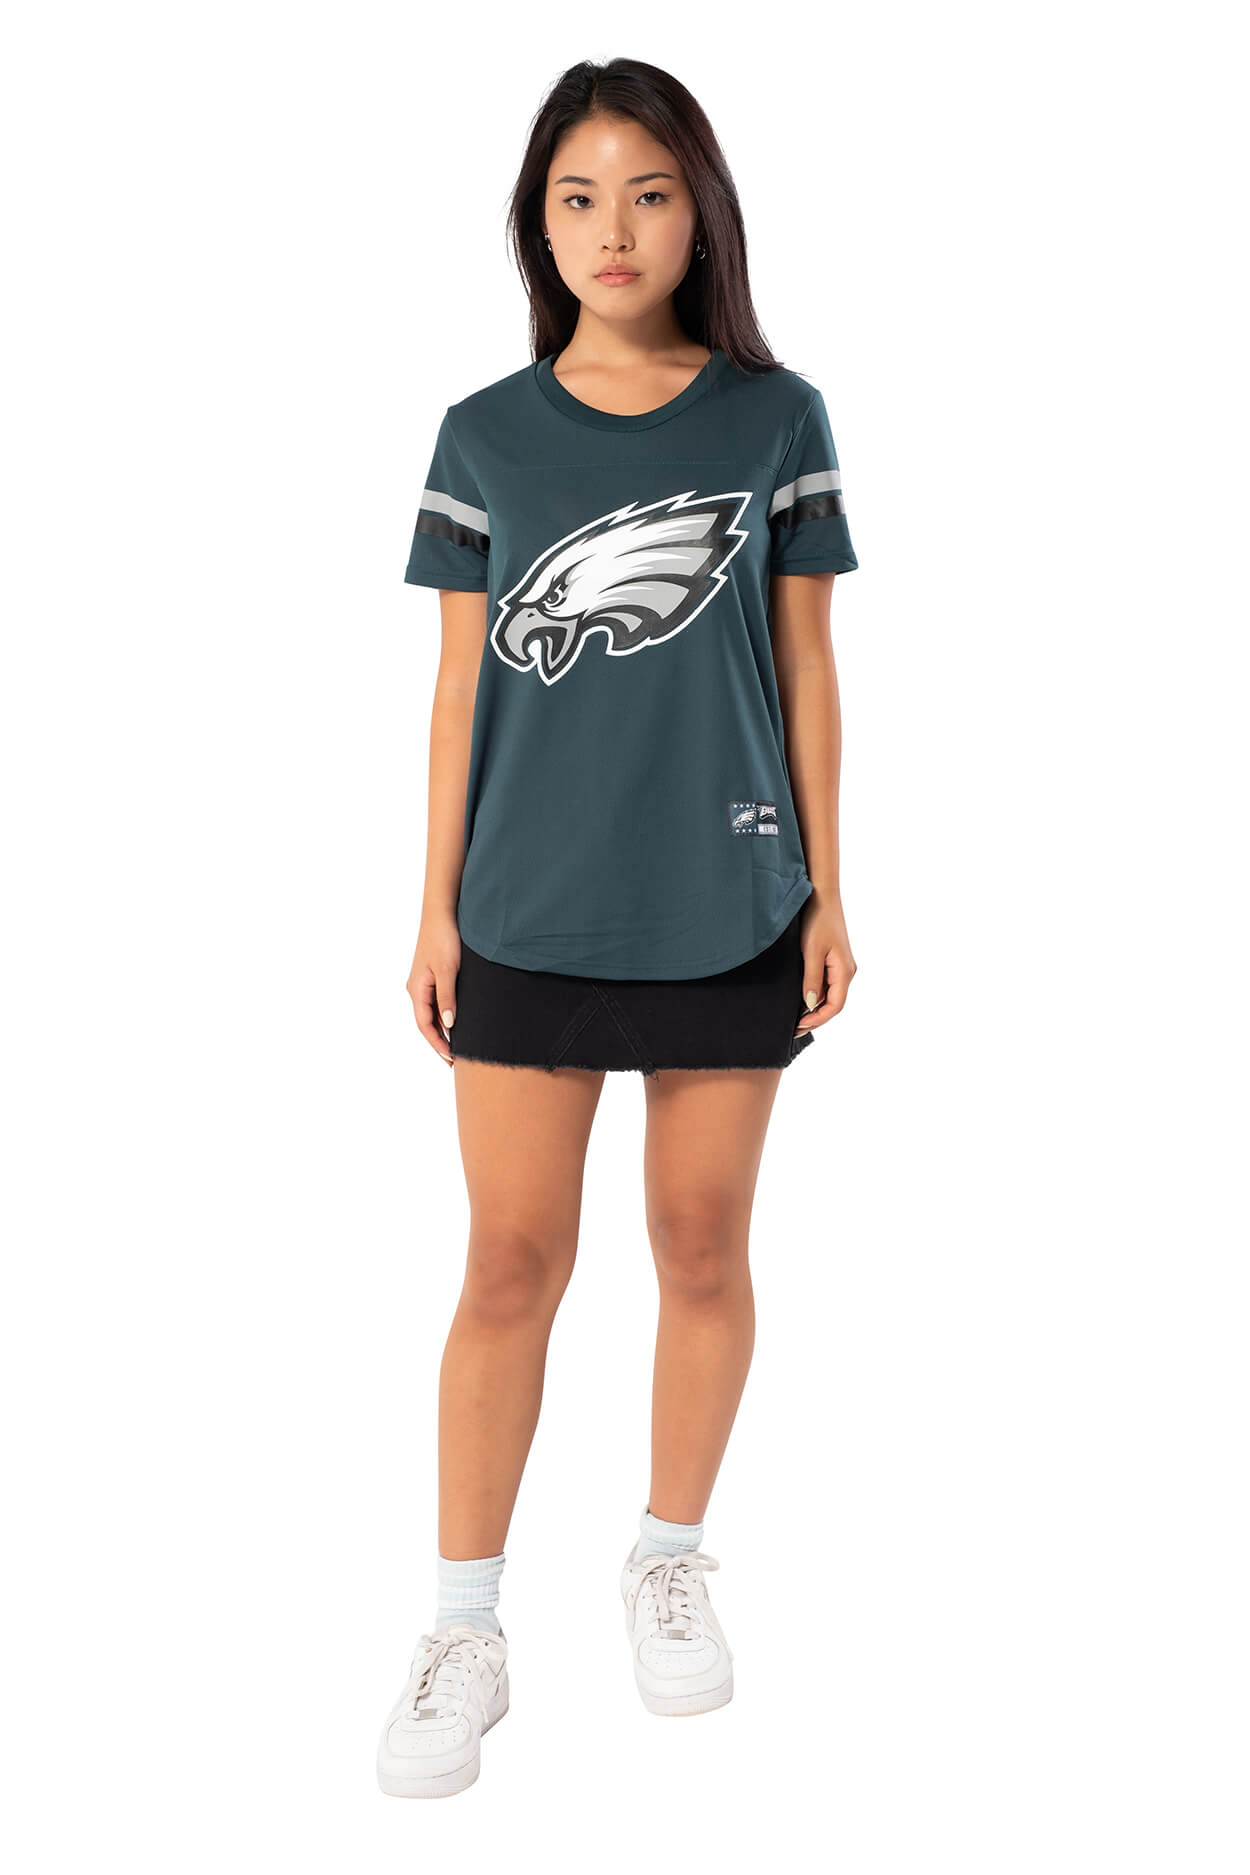 NFL Philadelphia Eagles Women's Varsity Stripe Tee|Philadelphia Eagles